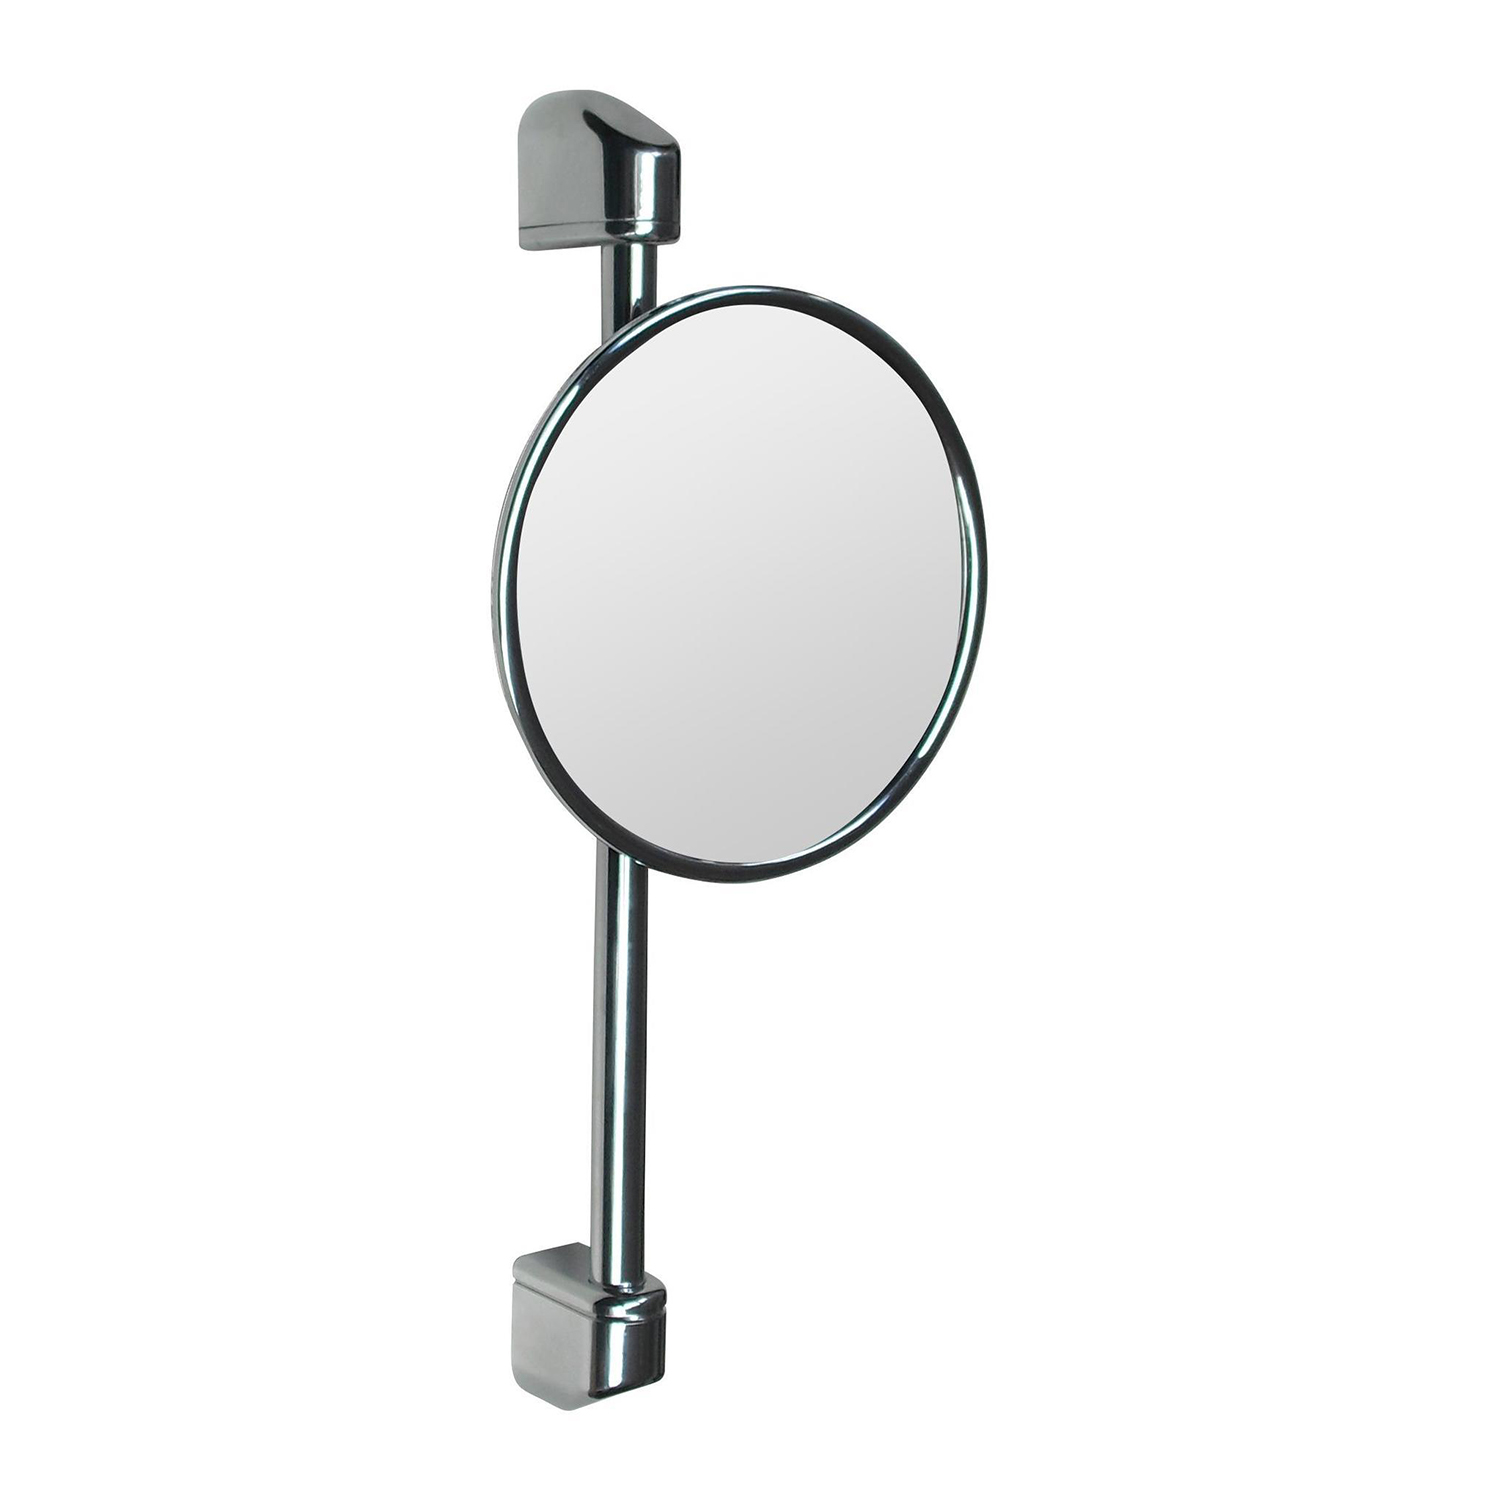 Косметическое зеркало Nofer Reflex 8012 косметическое зеркало keuco elegance 17677 019000